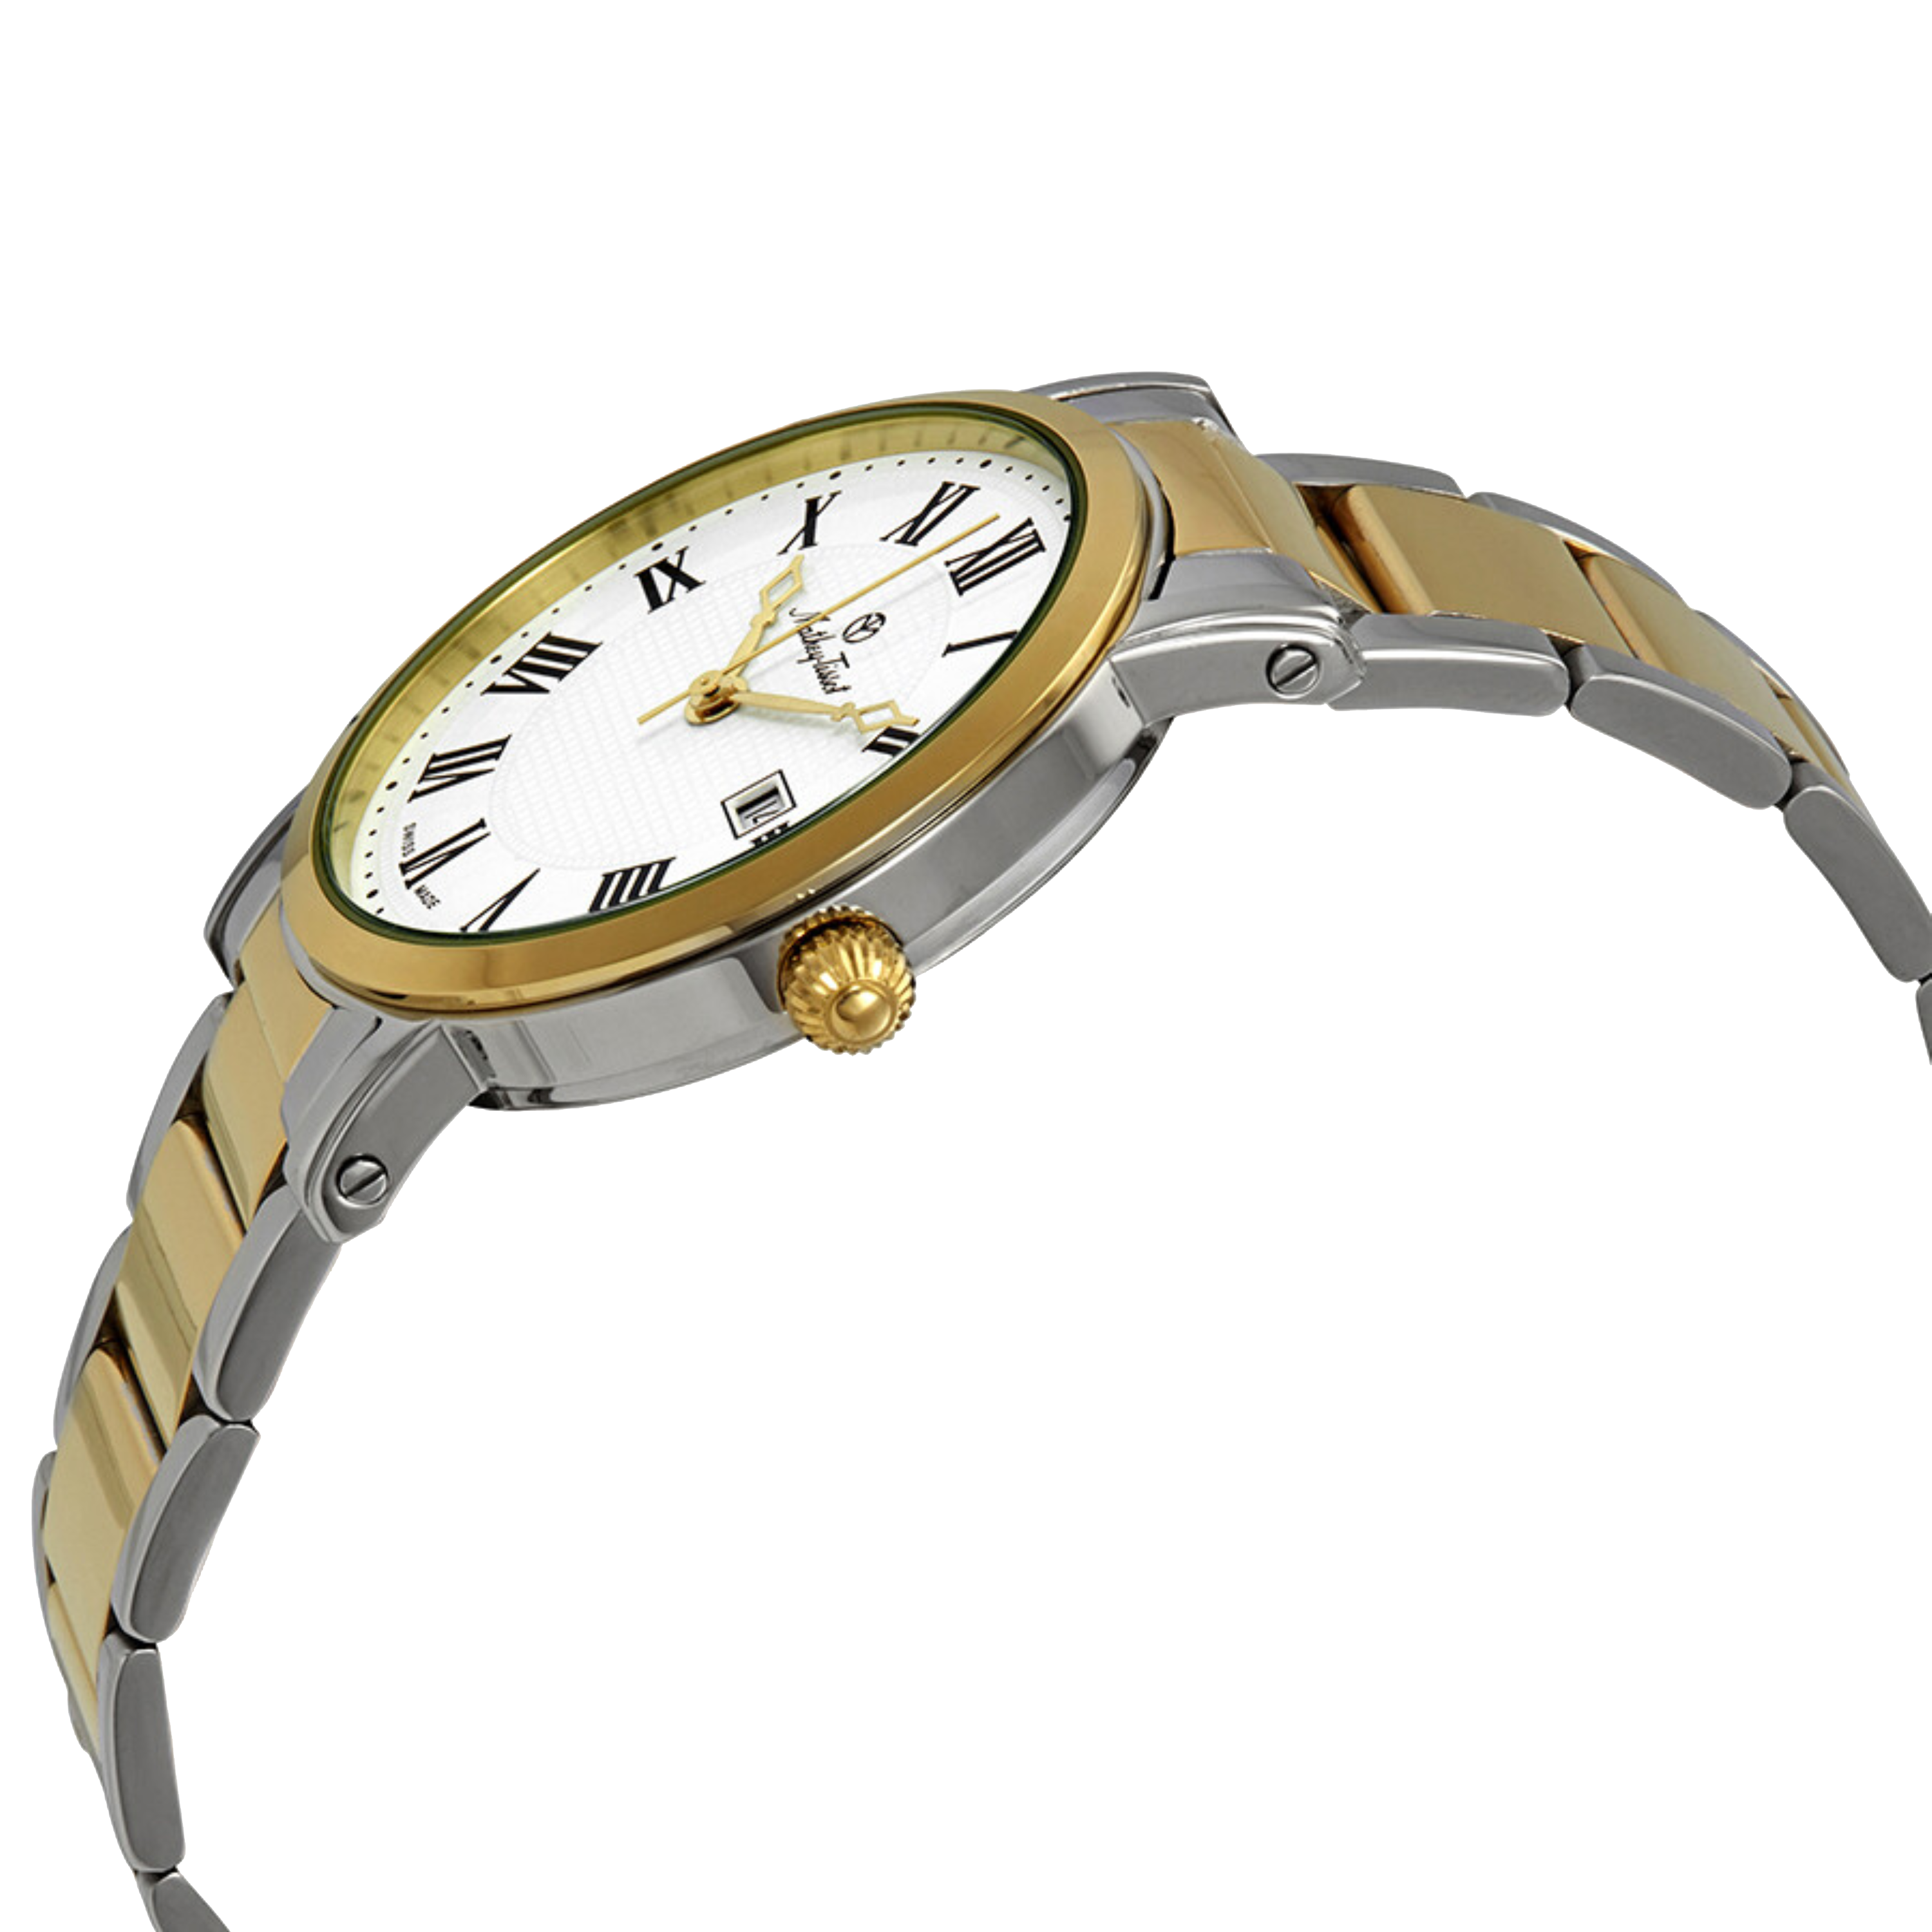 שעון יד לגבר Mathey Tissot H611251MBR 38mm צבע כסף/זהב ספרות רומיות - אחריות לשנתיים